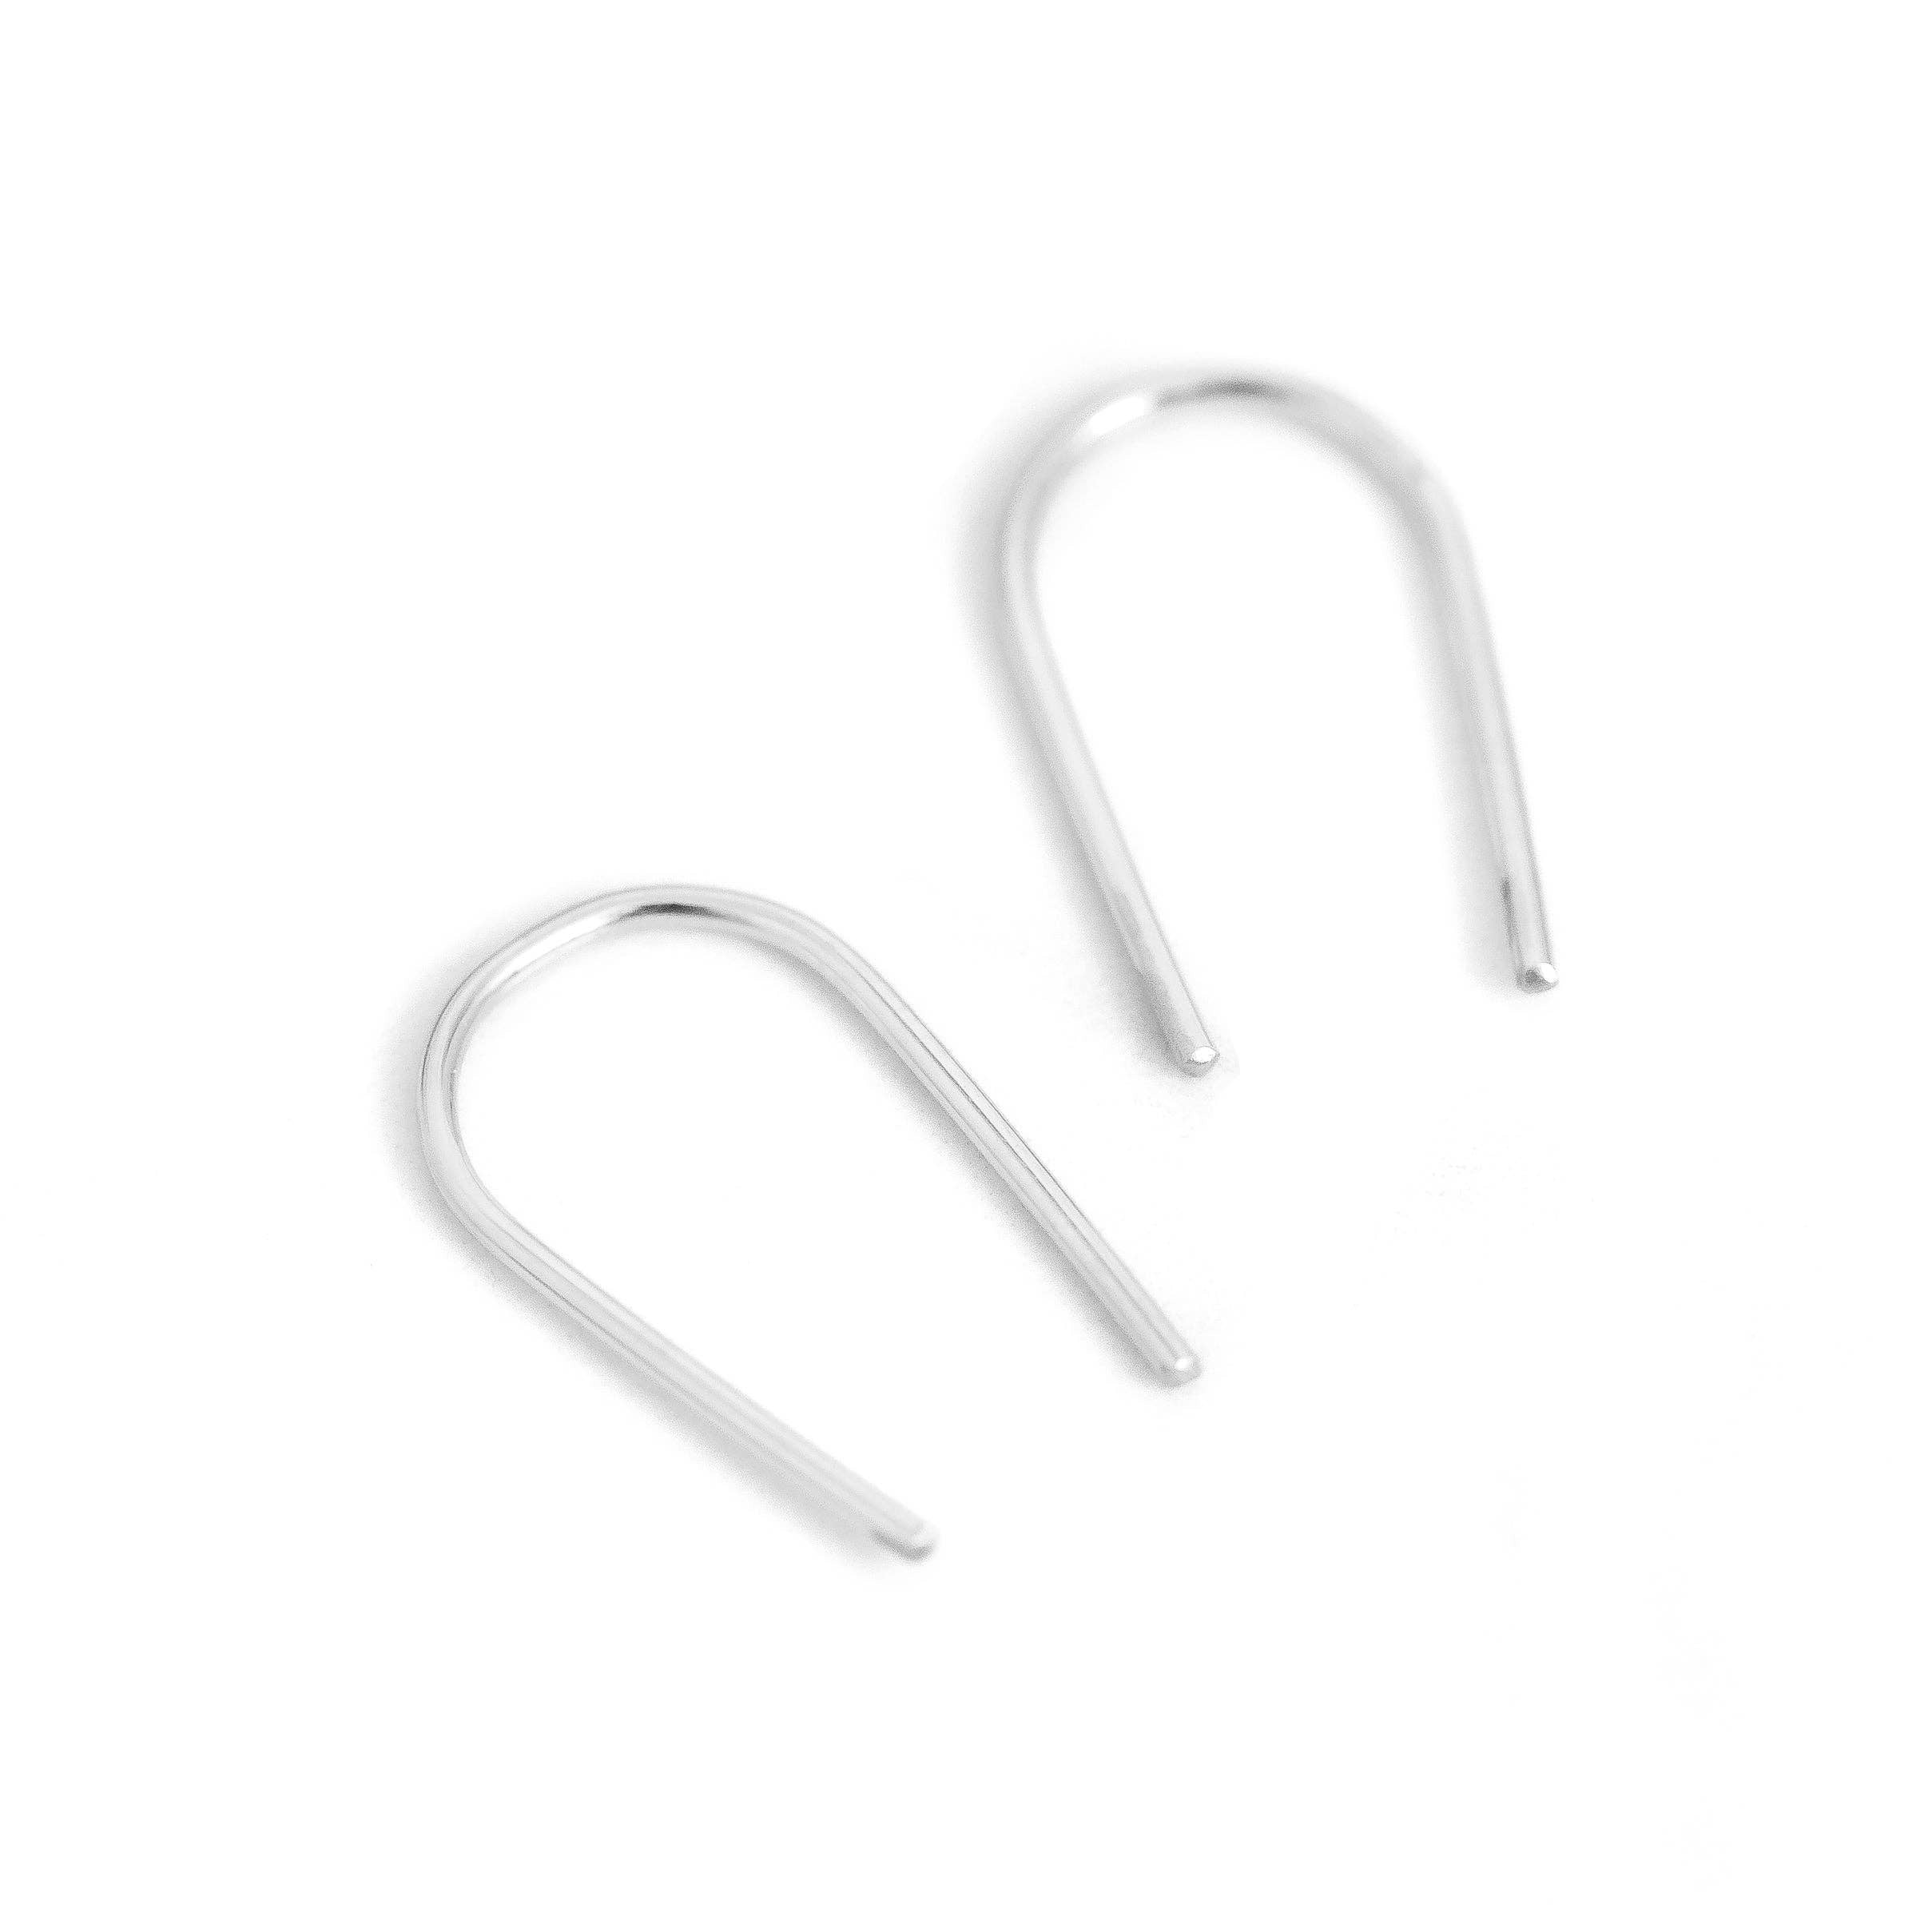 Open Arc Earrings - Minimalist, Hypoallergenic, Waterproof: Gold